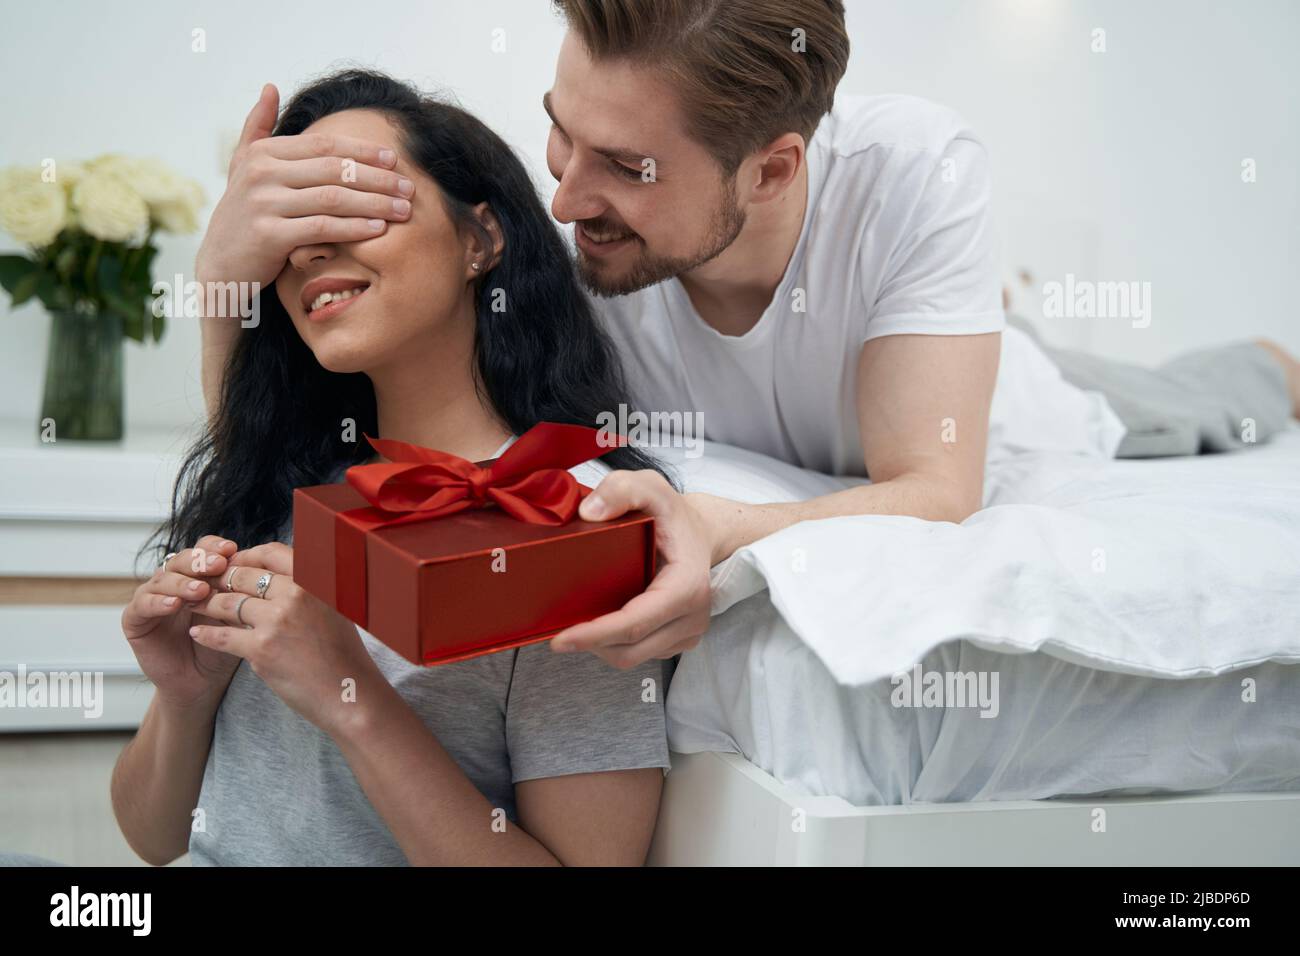 Homme aimant présentant le cadeau à la femme bien-aimée Banque D'Images